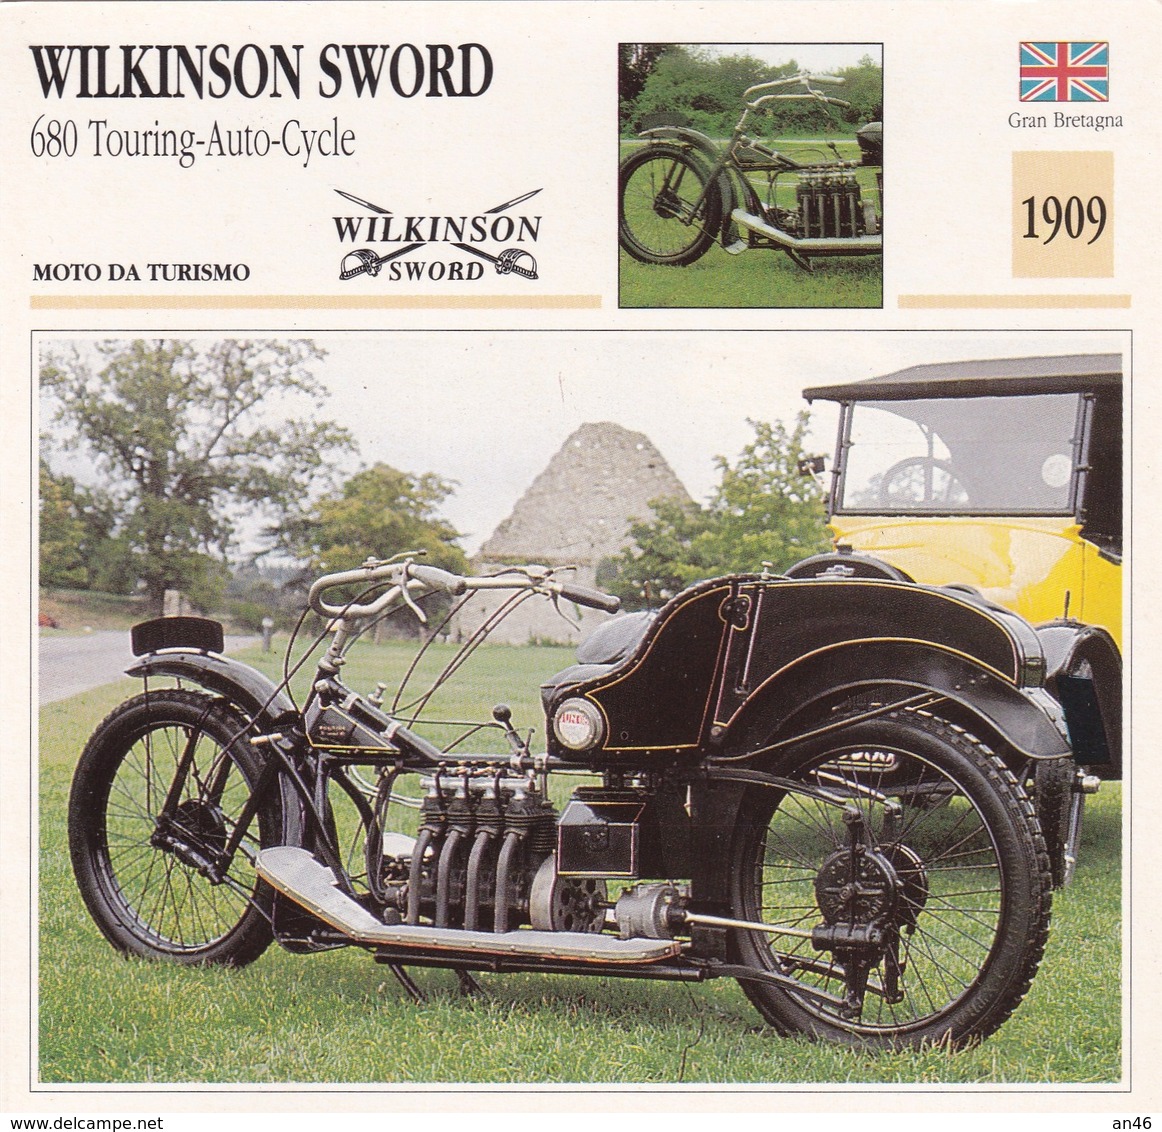 MOTO DA TURISMO WILKINSON SWORD 680 TOURING AUTO CYCLE GRAN BRETAGNA 1909 DESCRIZIONE COMPLETA SUL RETRO AUTENTICA 100% - Advertising